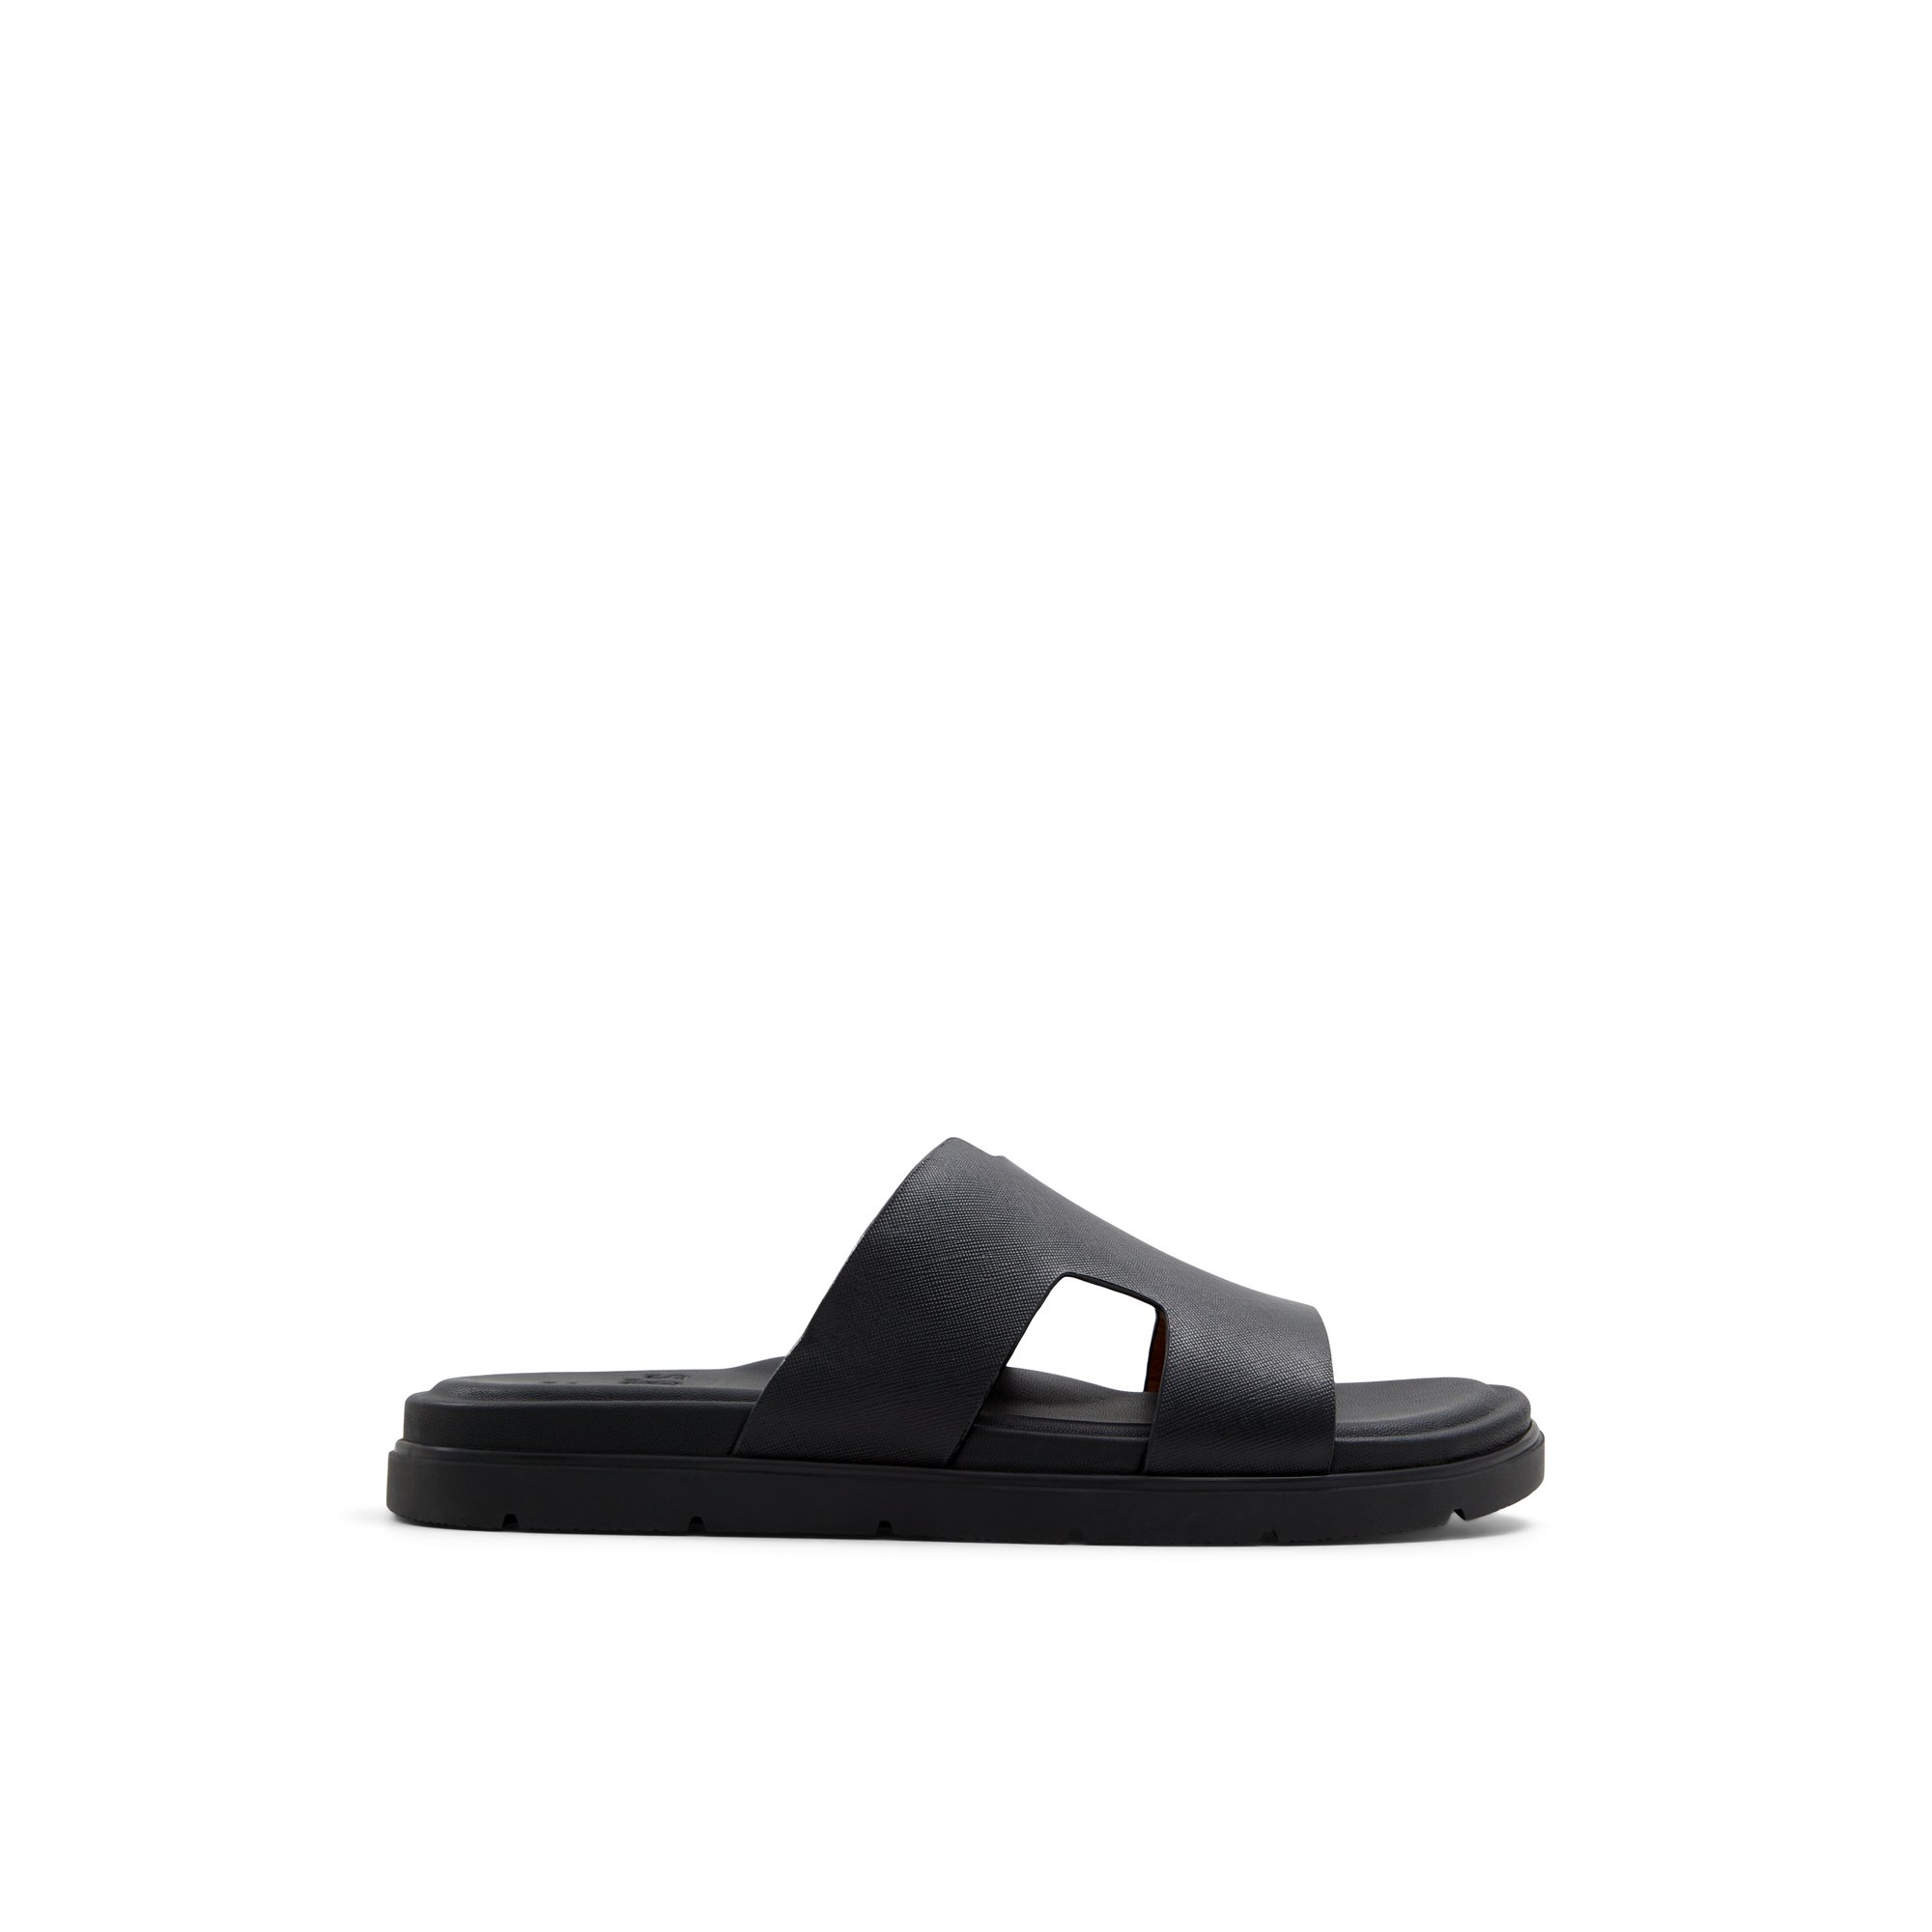 ALDO Chano - Men's Sandal - Black